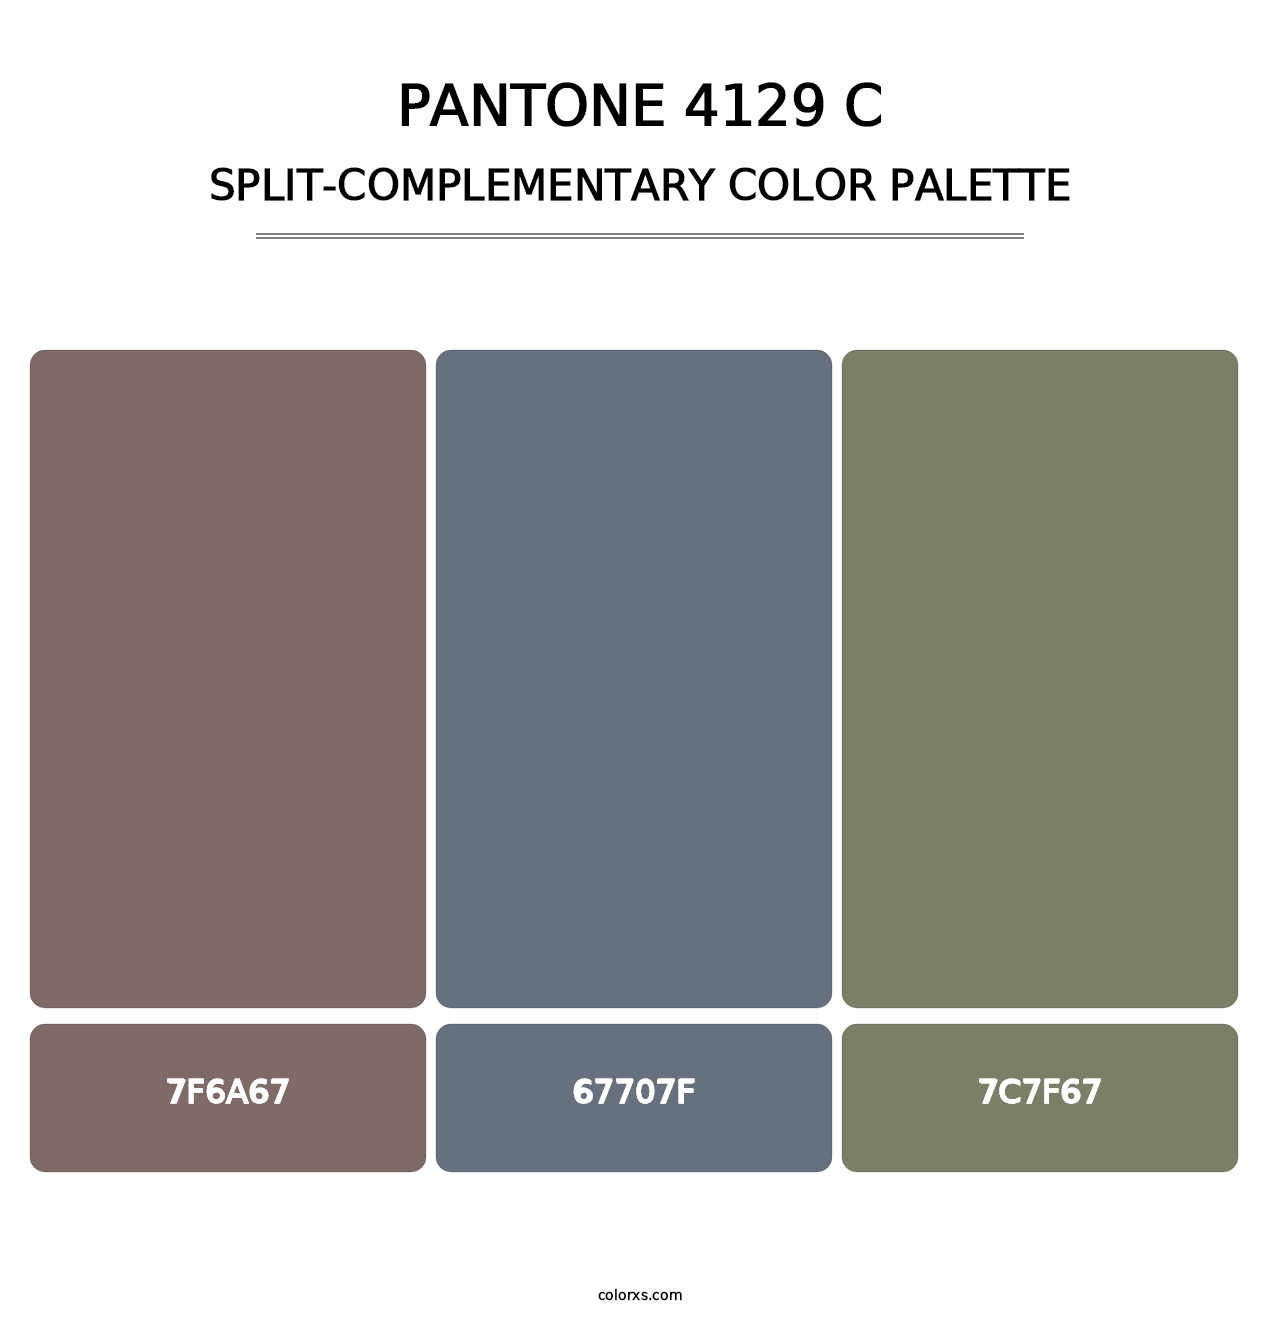 PANTONE 4129 C - Split-Complementary Color Palette